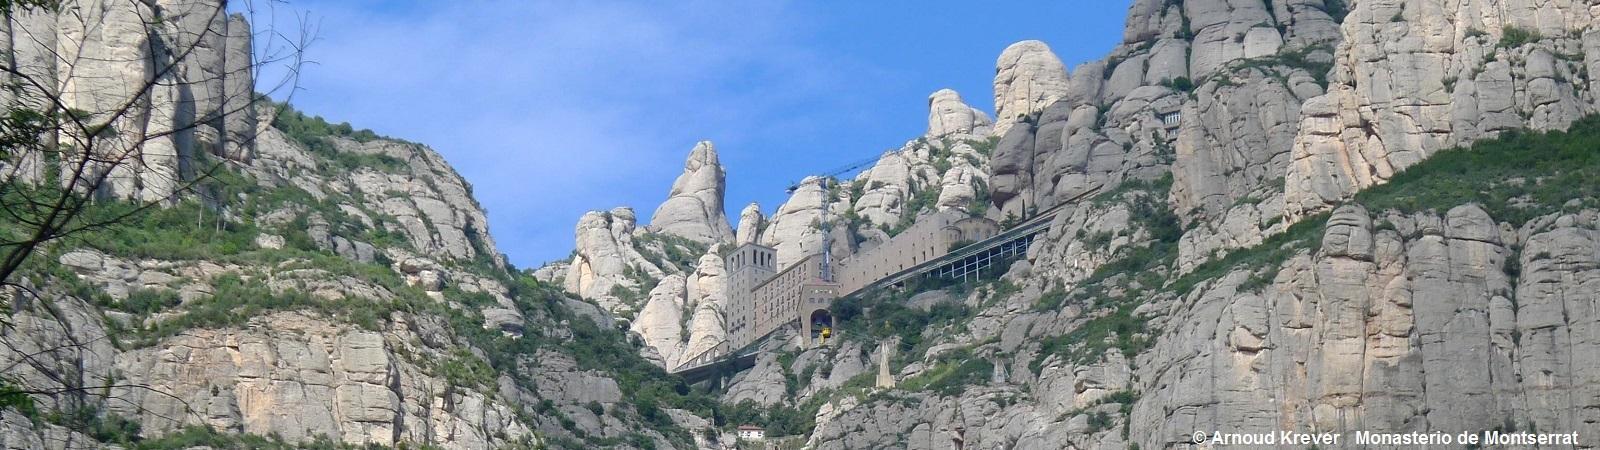 16BarS (267) Montserrat, het klooster en gele kabelbaancabine